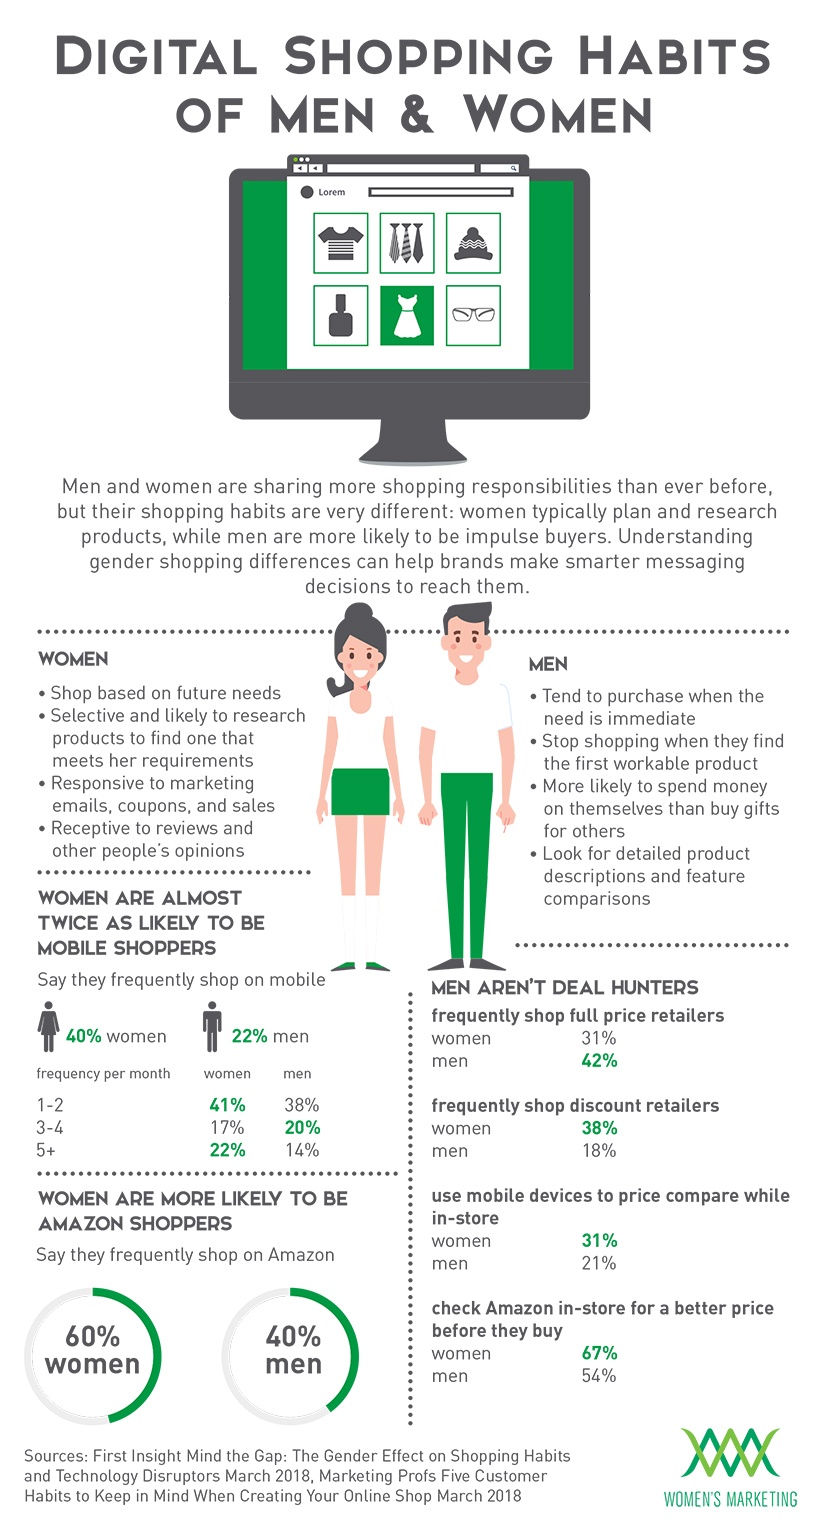 DigitalShoppingHabitsMenvsWomen_Infographic